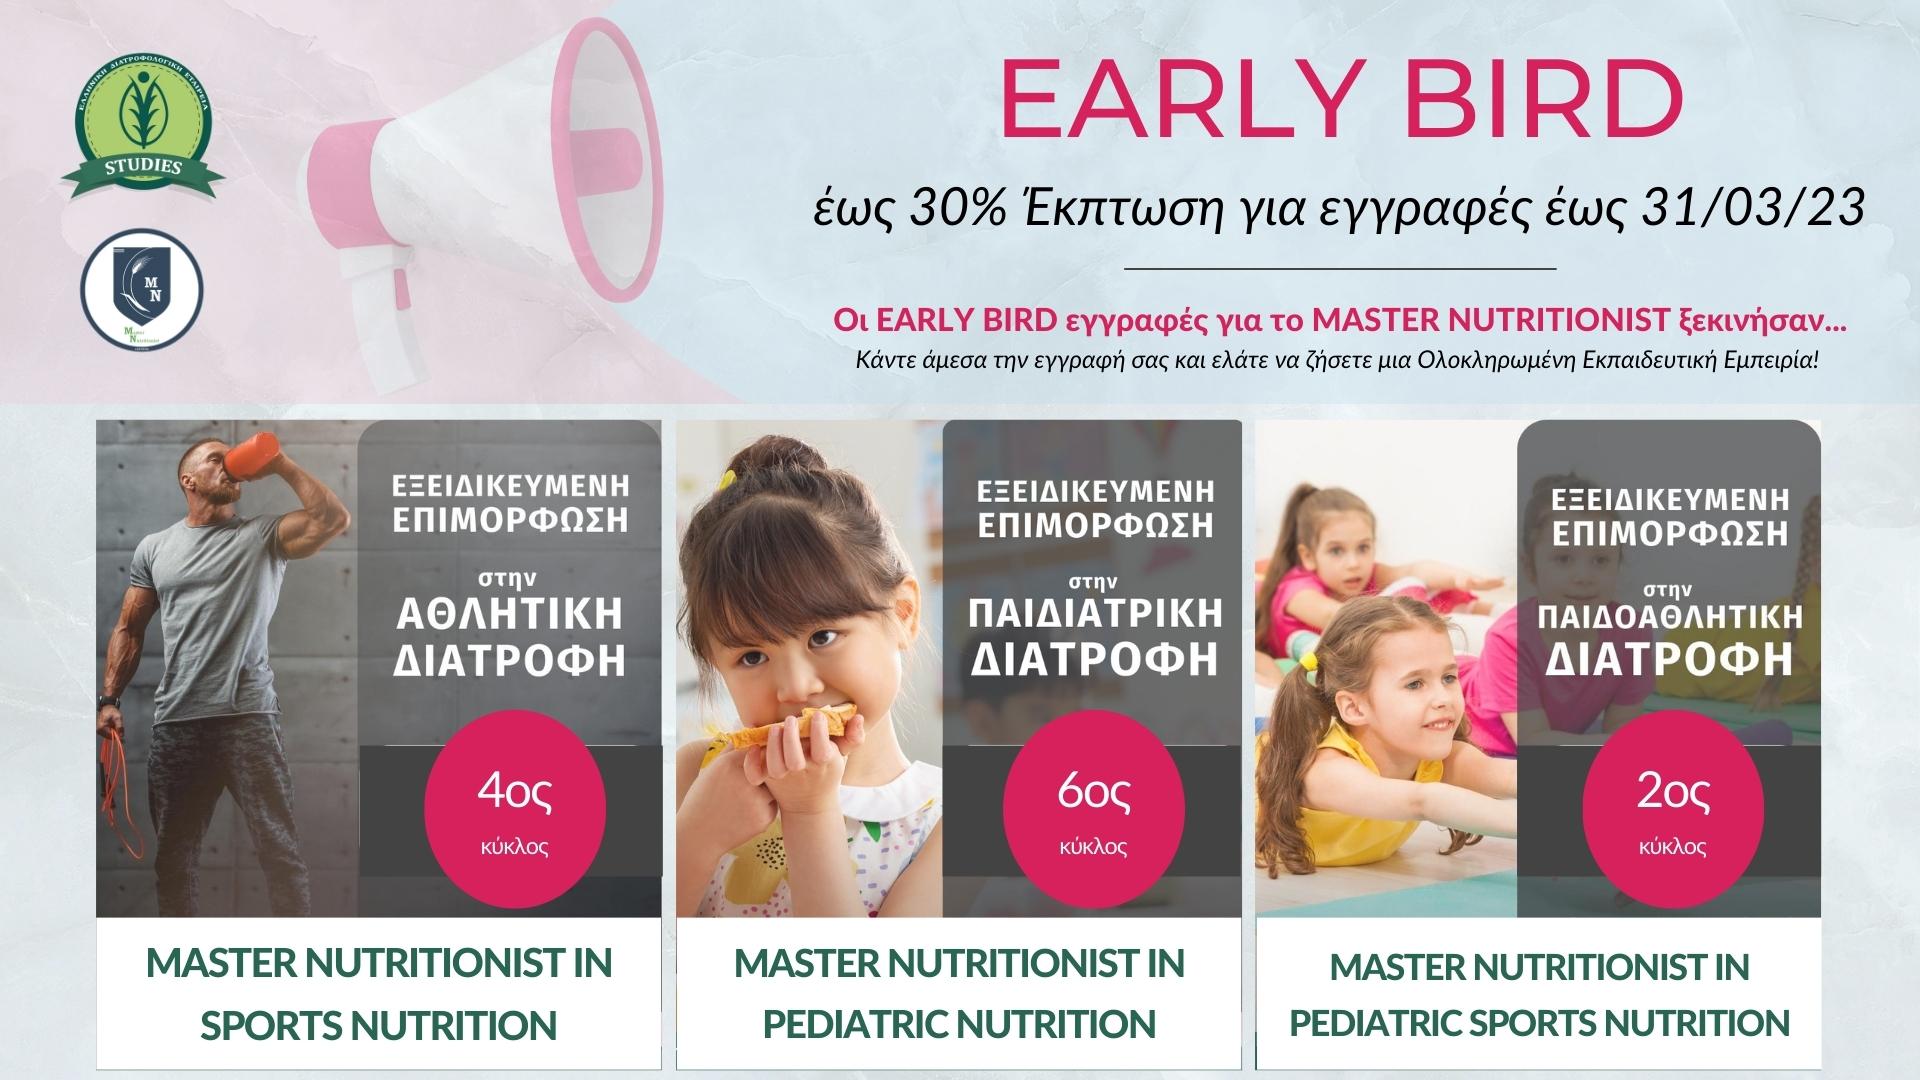 ΕΛΔΕ STUDIES - MASTER NUTRITIONIST - EARLY BIRD